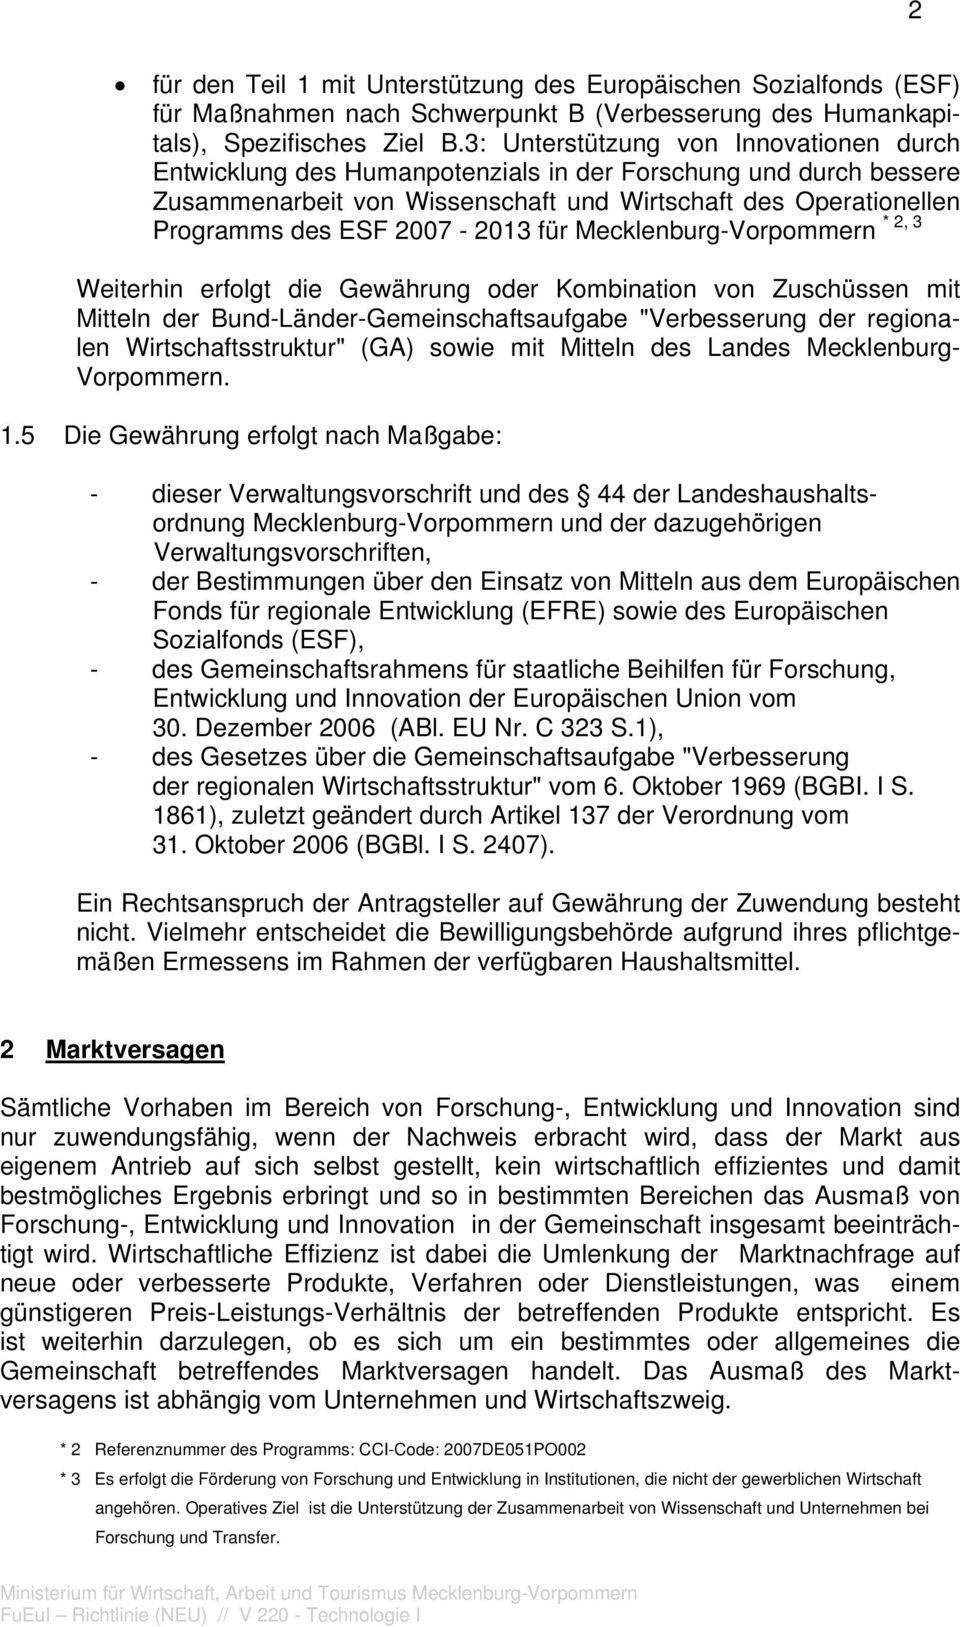 2007-2013 für Mecklenburg-Vorpommern * 2, 3 Weiterhin erfolgt die Gewährung oder Kombination von Zuschüssen mit Mitteln der Bund-Länder-Gemeinschaftsaufgabe "Verbesserung der regionalen